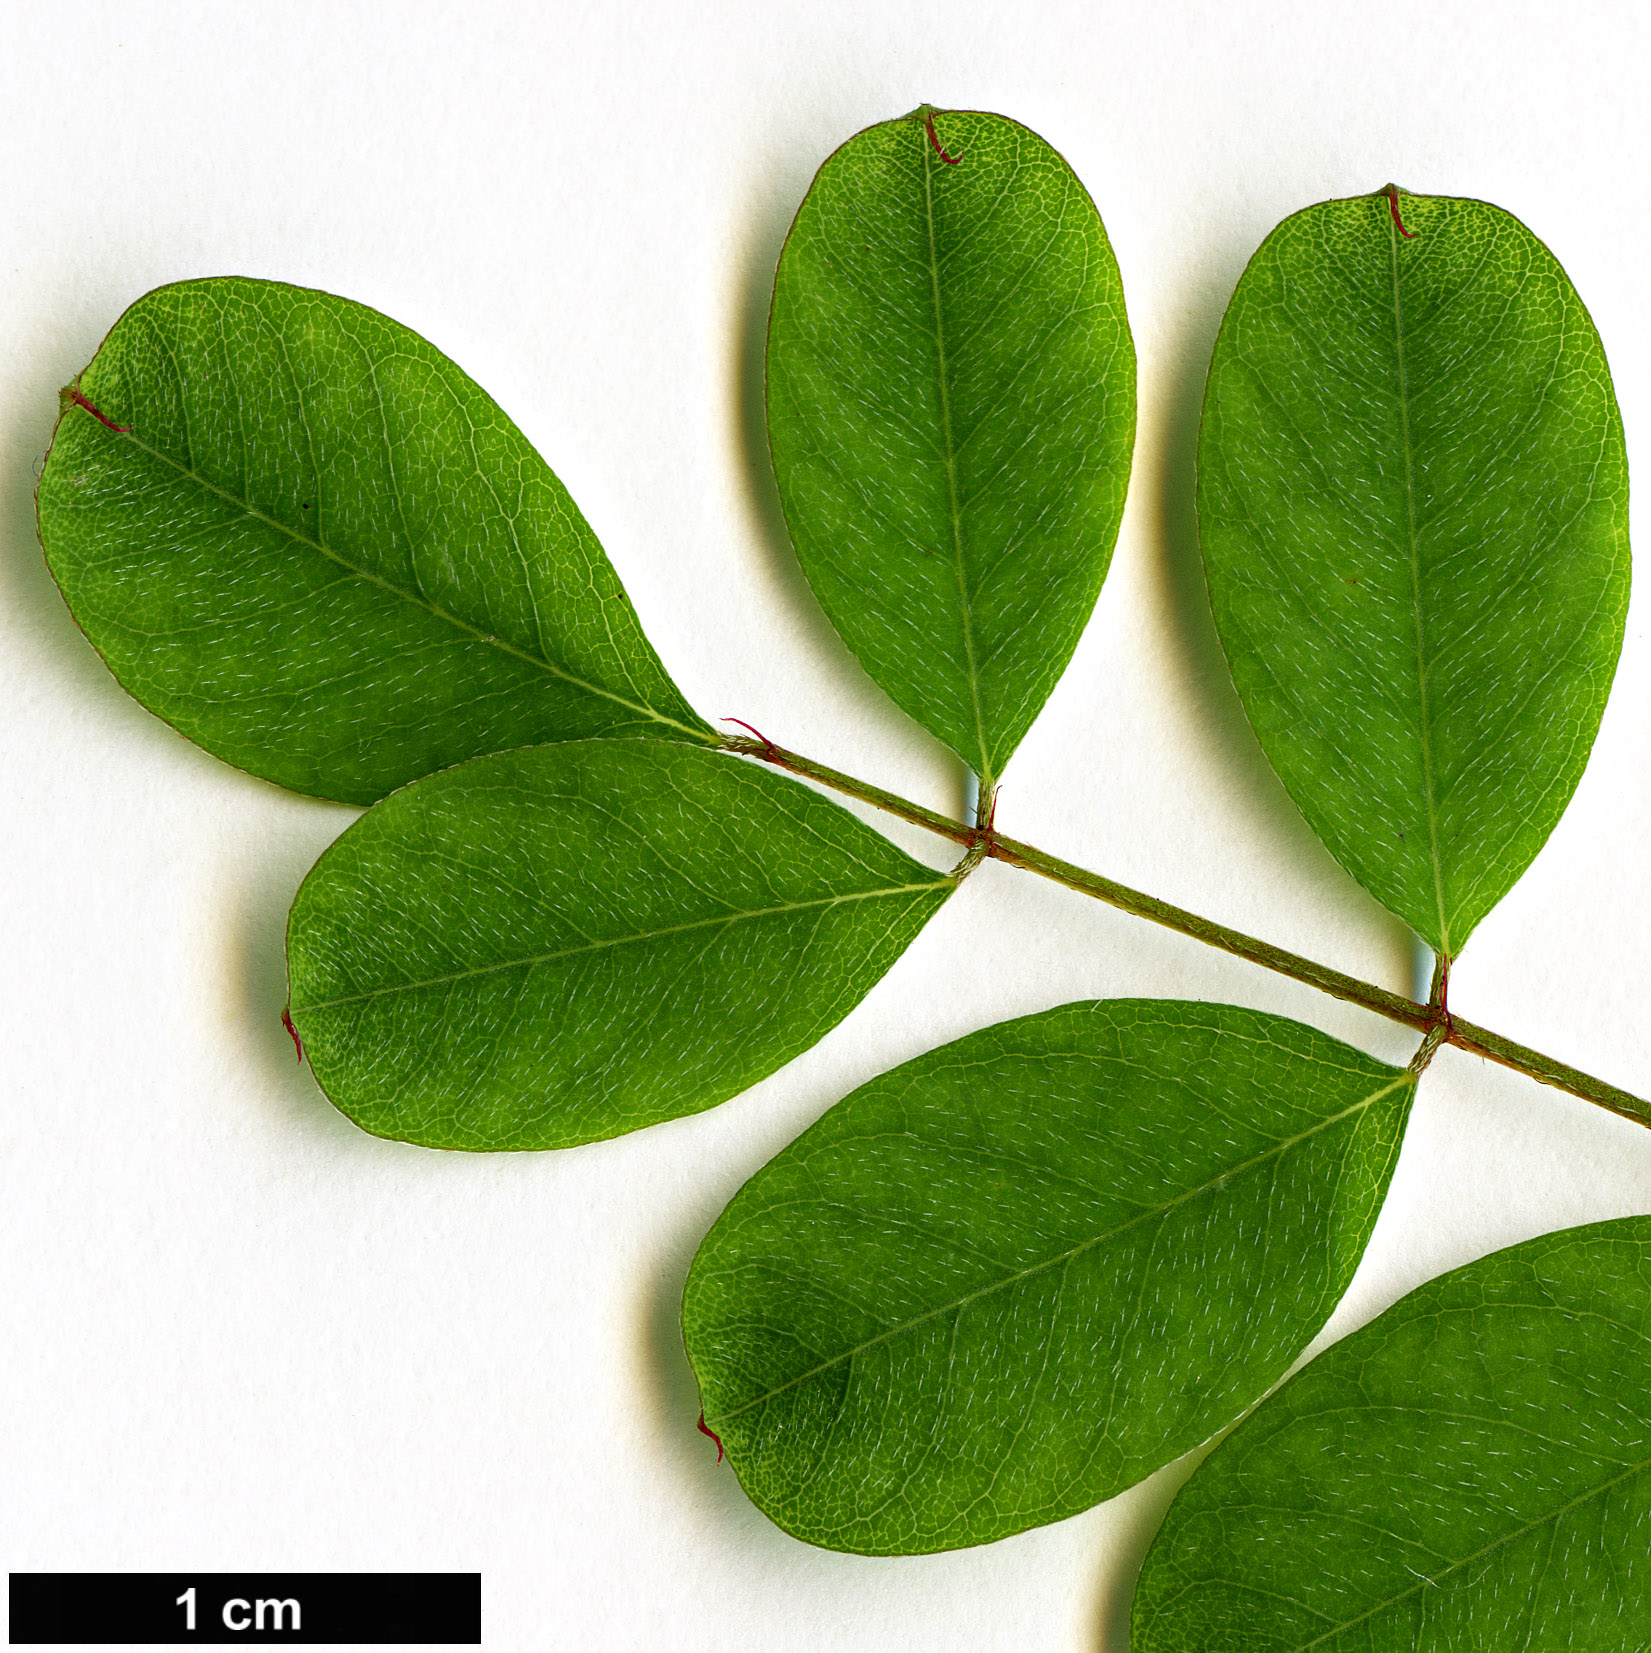 High resolution image: Family: Fabaceae - Genus: Indigofera - Taxon: himalayensis